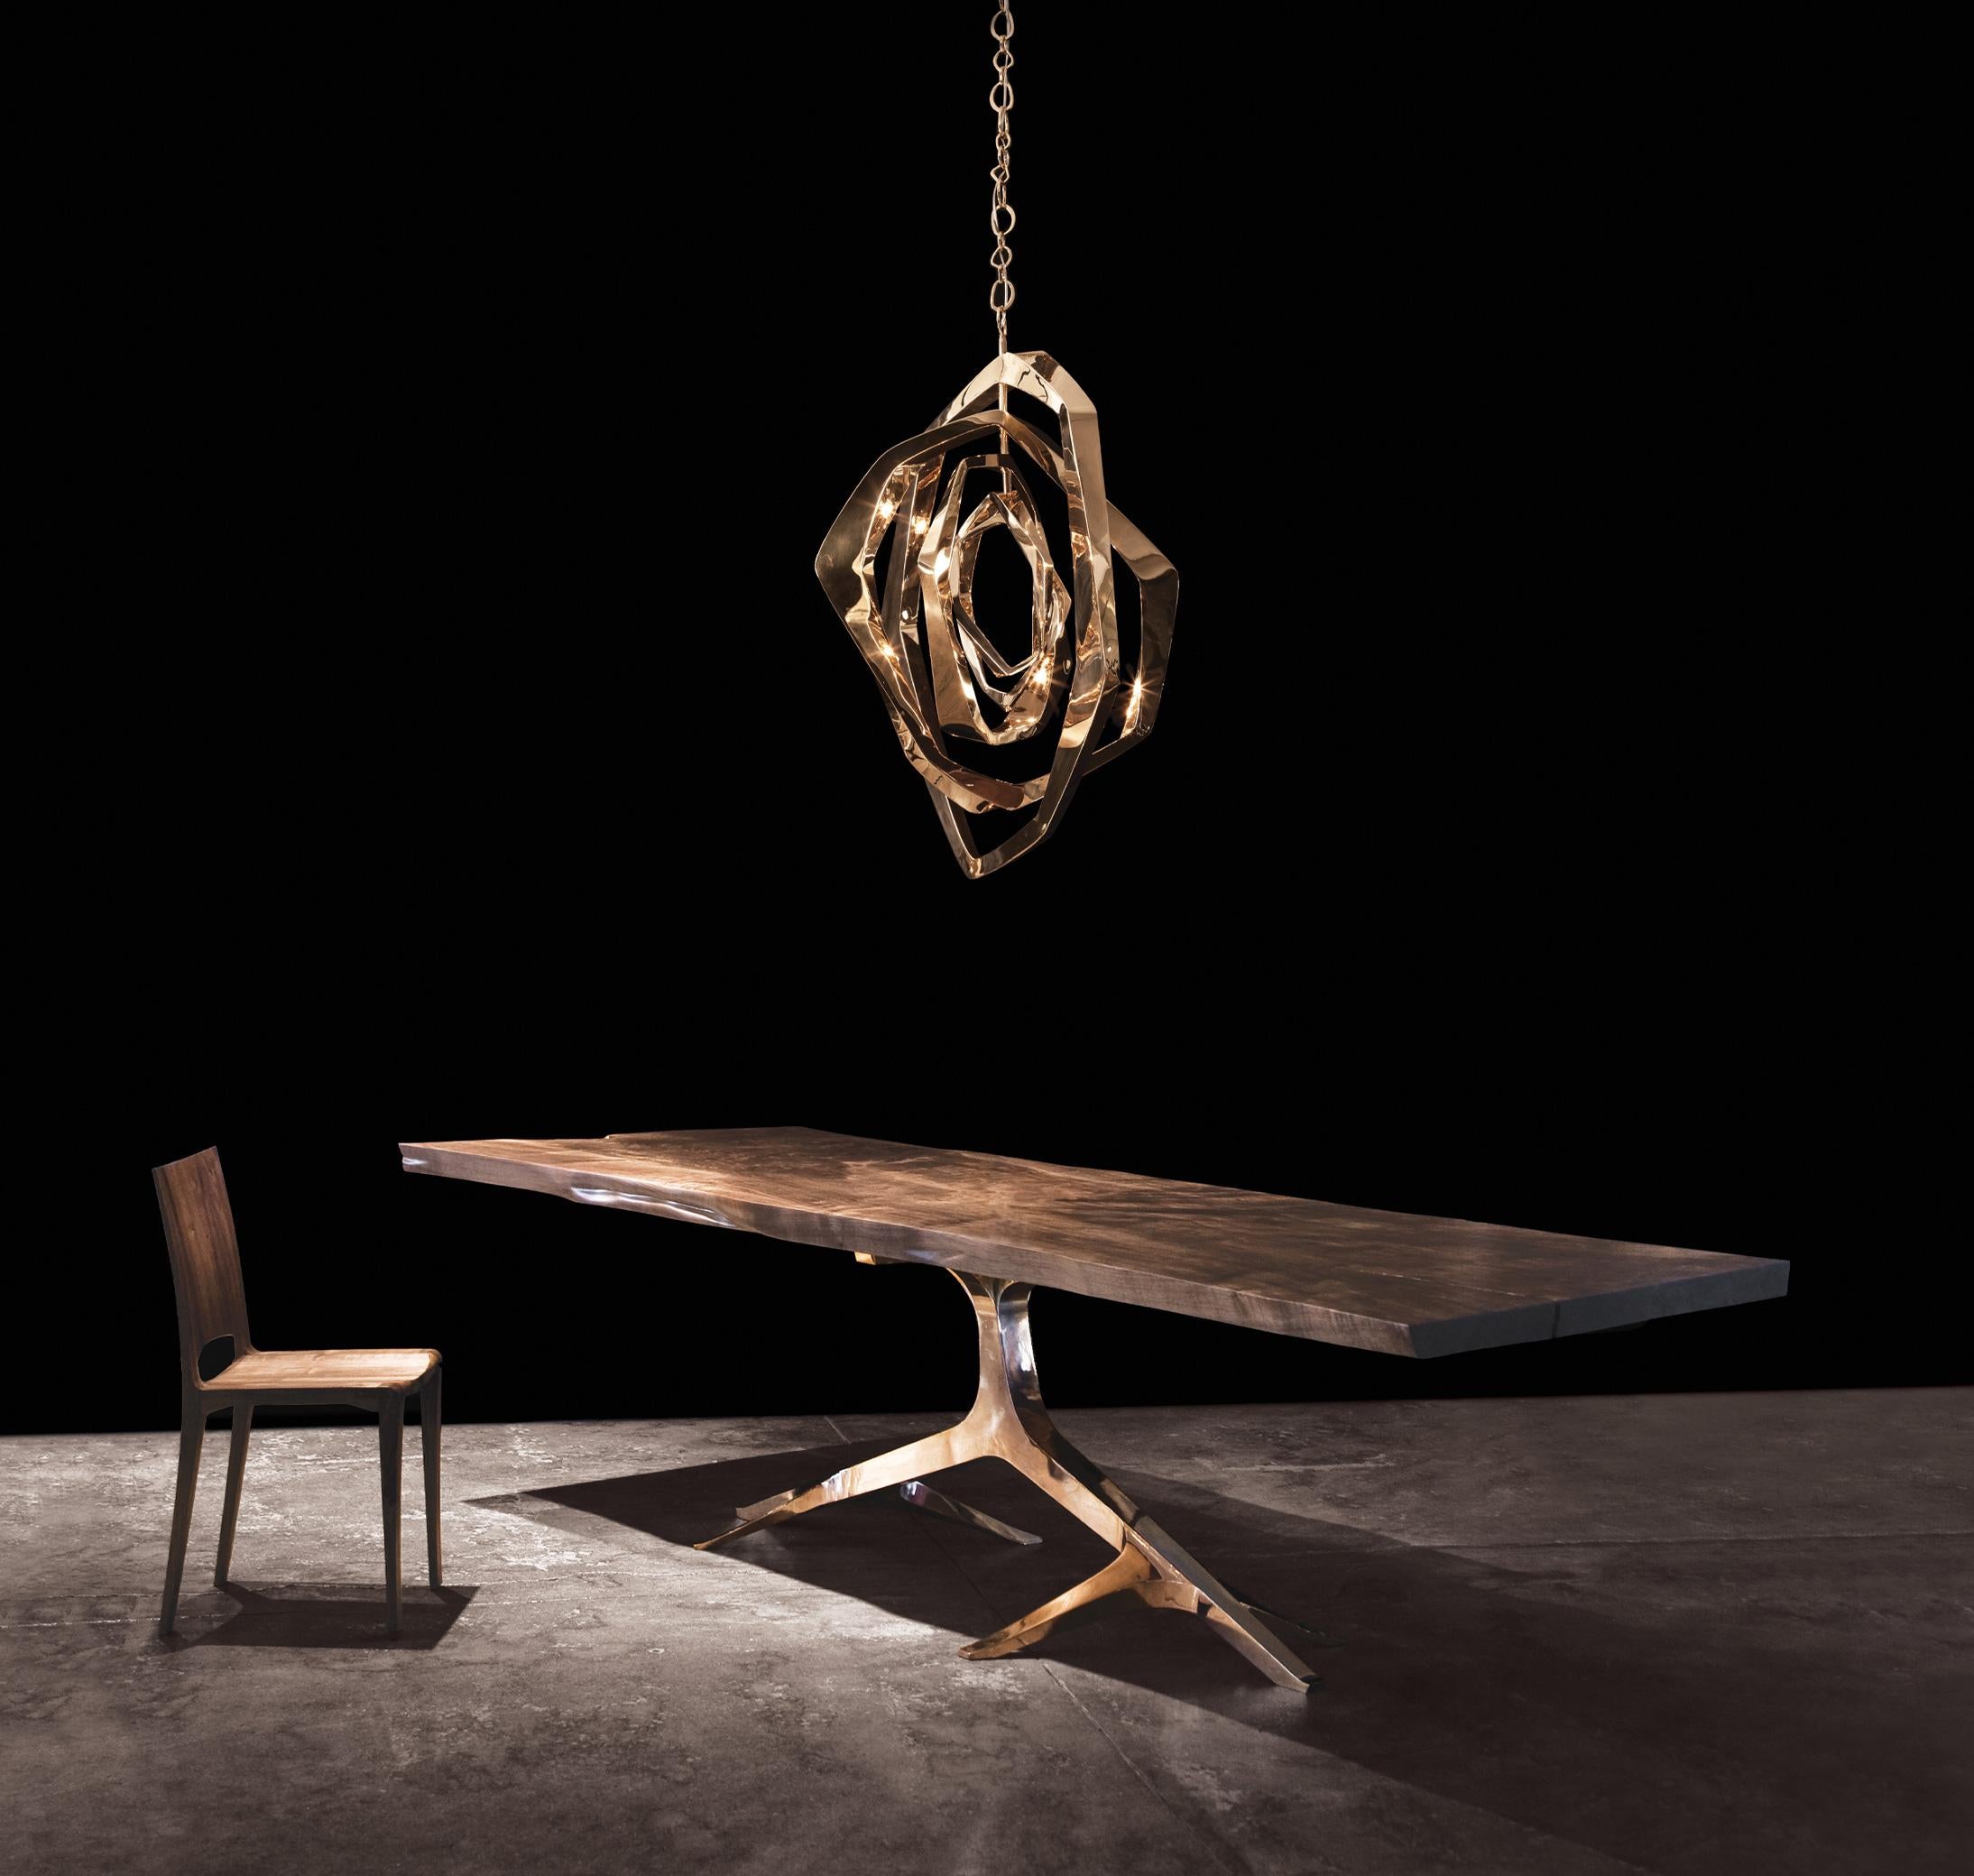 La magnifique table de salle à manger Rose Base de Barlas Baylar se compose d'une base ornée en bronze ou en acier inoxydable qui danse élégamment avec les bords organiques du plateau Live Edge.  Ce plateau en noyer massif, Live Edge, est créé à